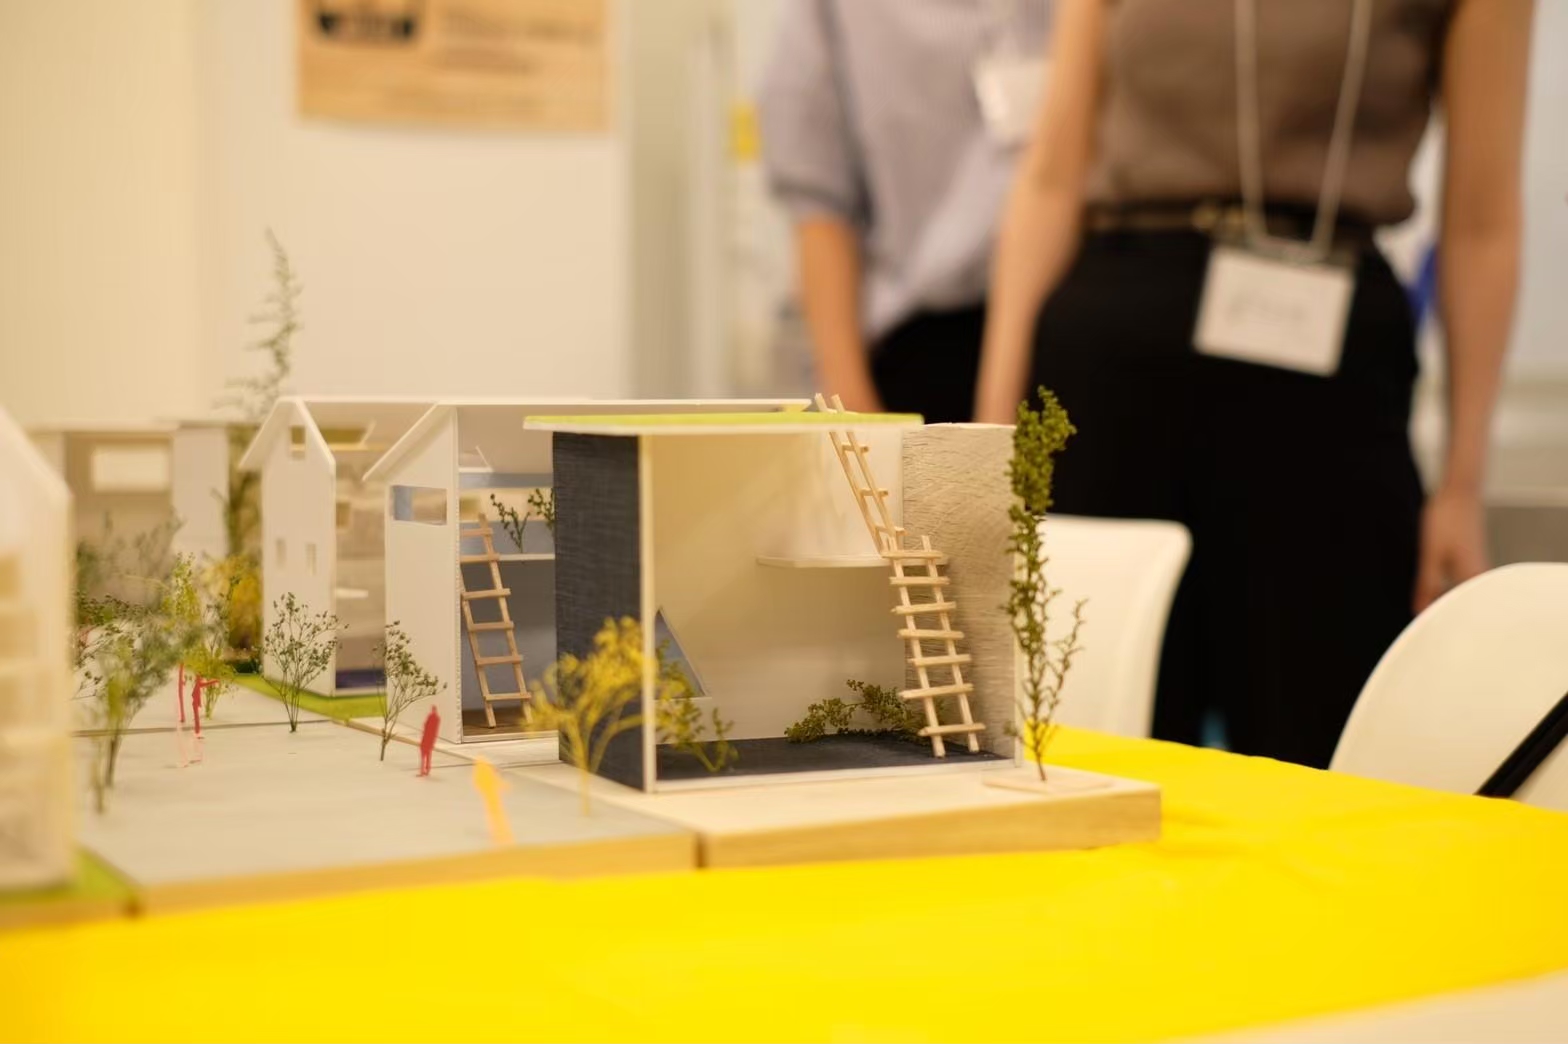 「家の模型と街を創り上げる体験学習型ワークショップ」に参加してみて